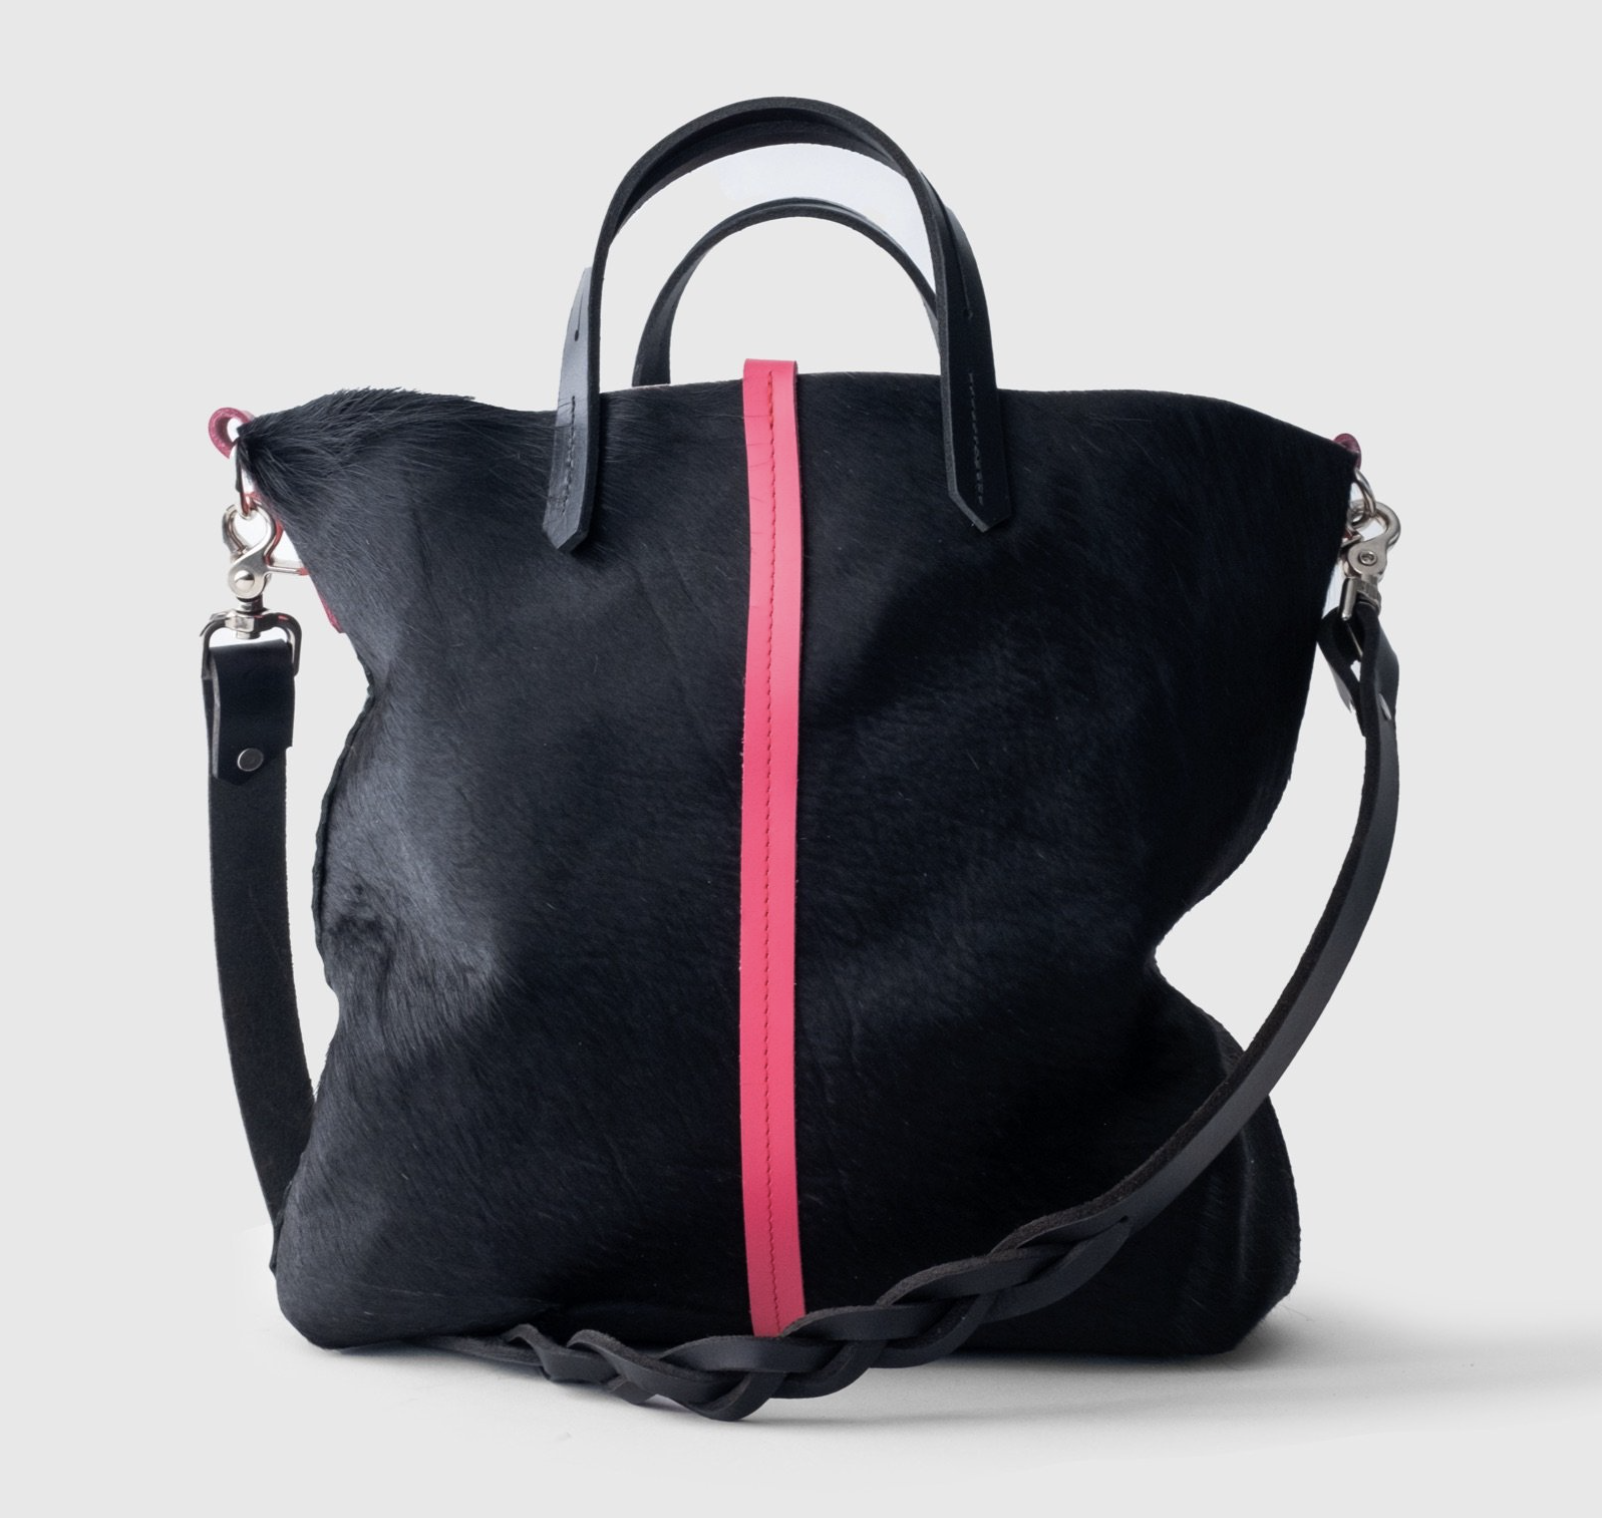 Lover fighter bespoke bag. Black with pink stripe